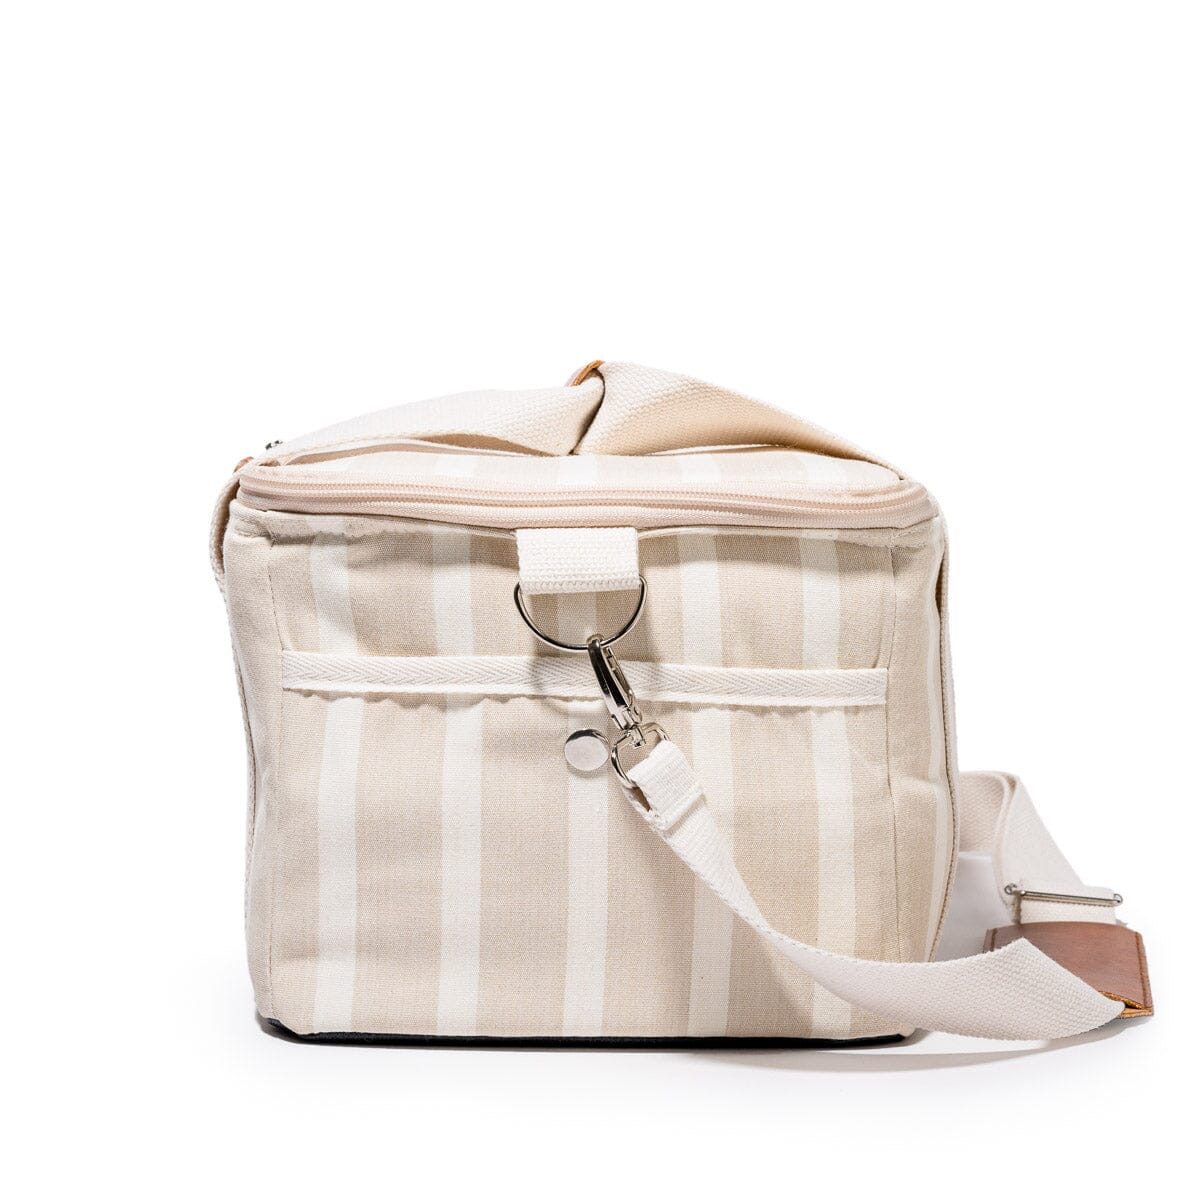 The Premium Cooler Bag - Monaco Natural Stripe Premium Cooler Business & Pleasure Co 